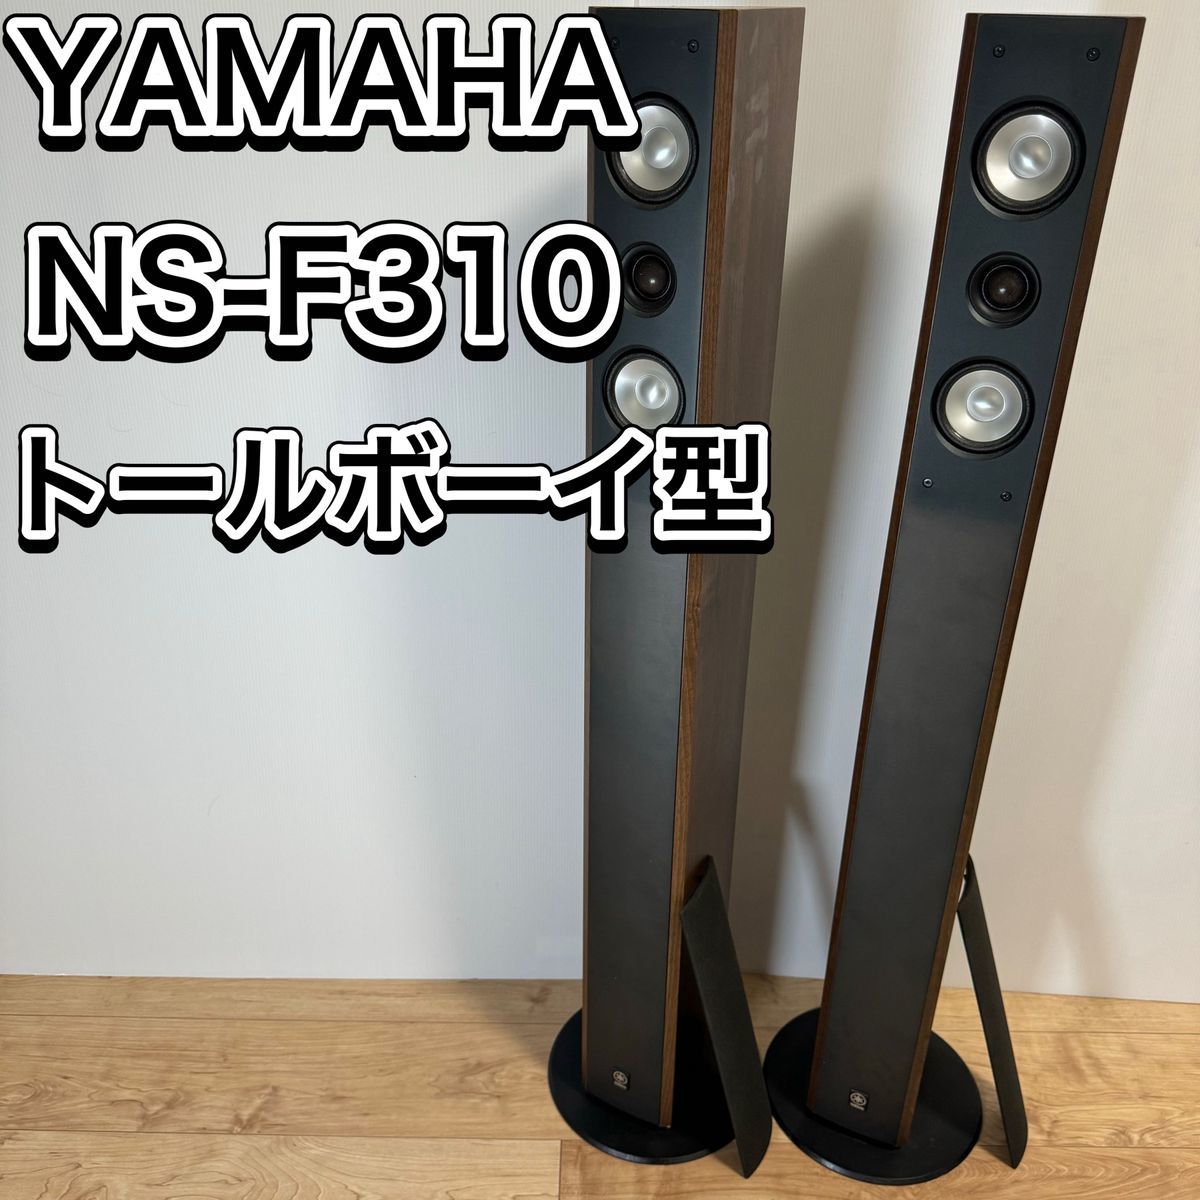 高品質の激安 YAMAHA NS-F310 ペア スピーカー トールボーイ フロア型